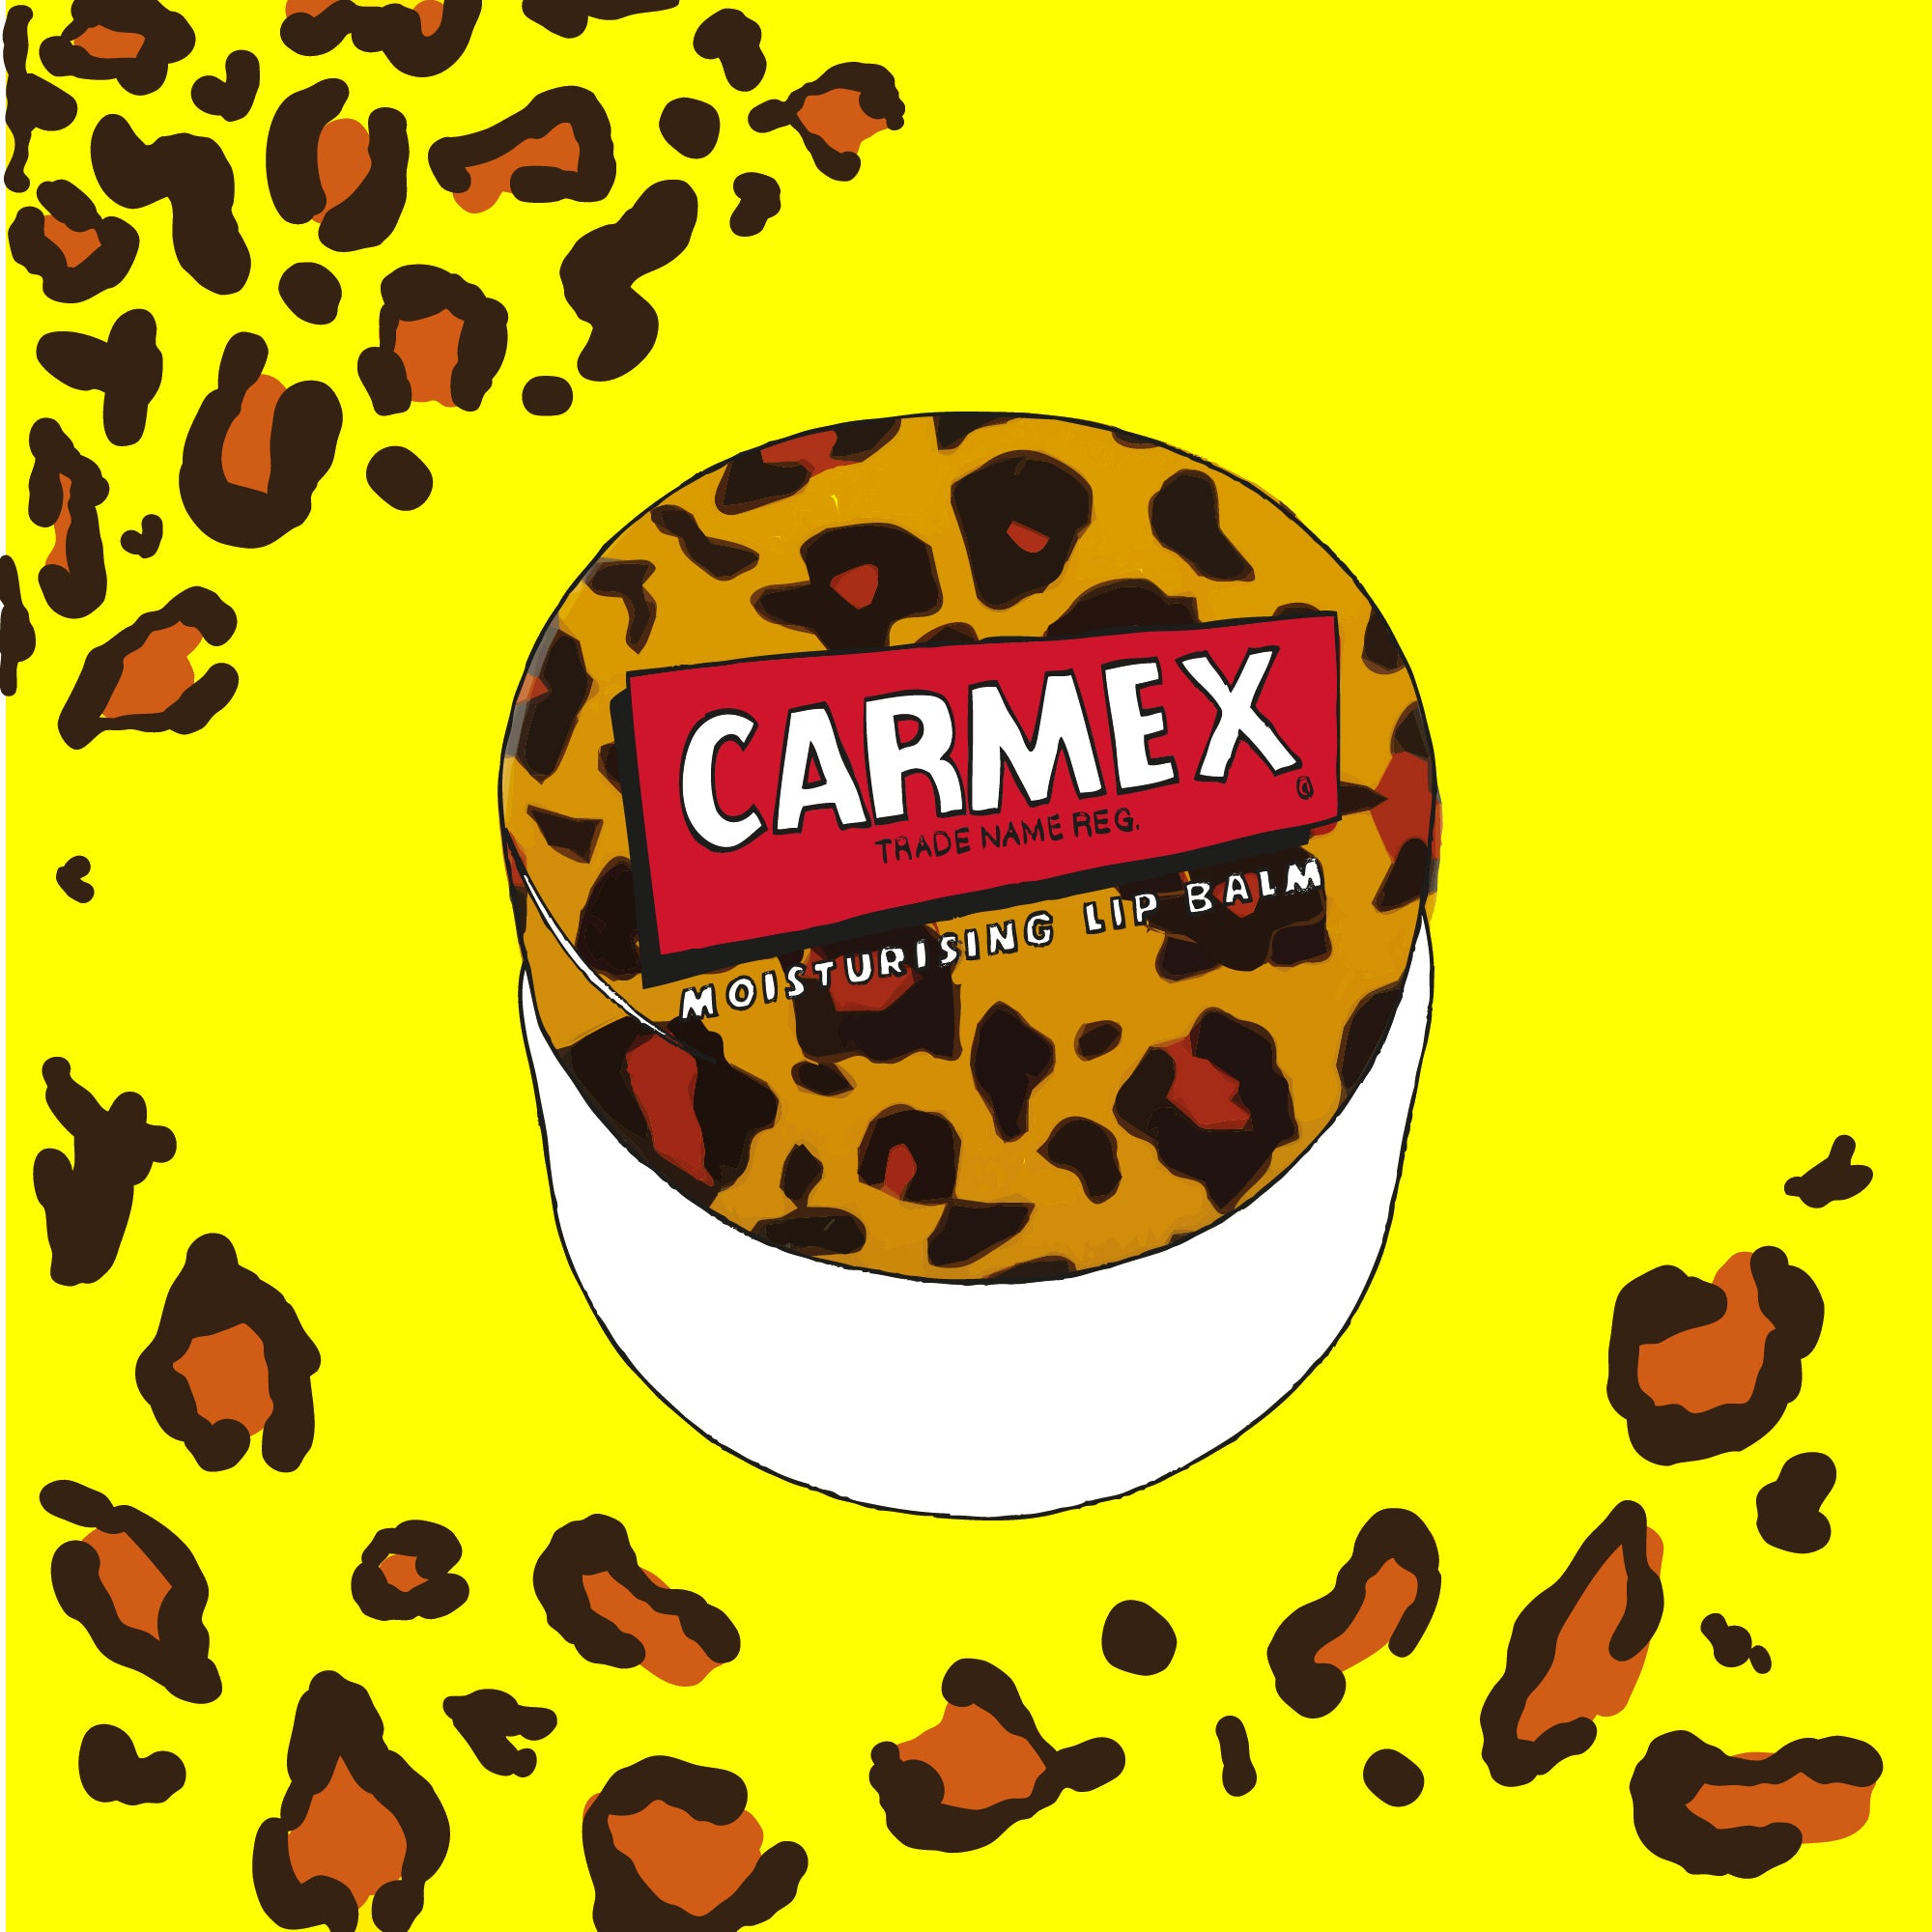 CARMEX Wild Lip Pot (7.5g)